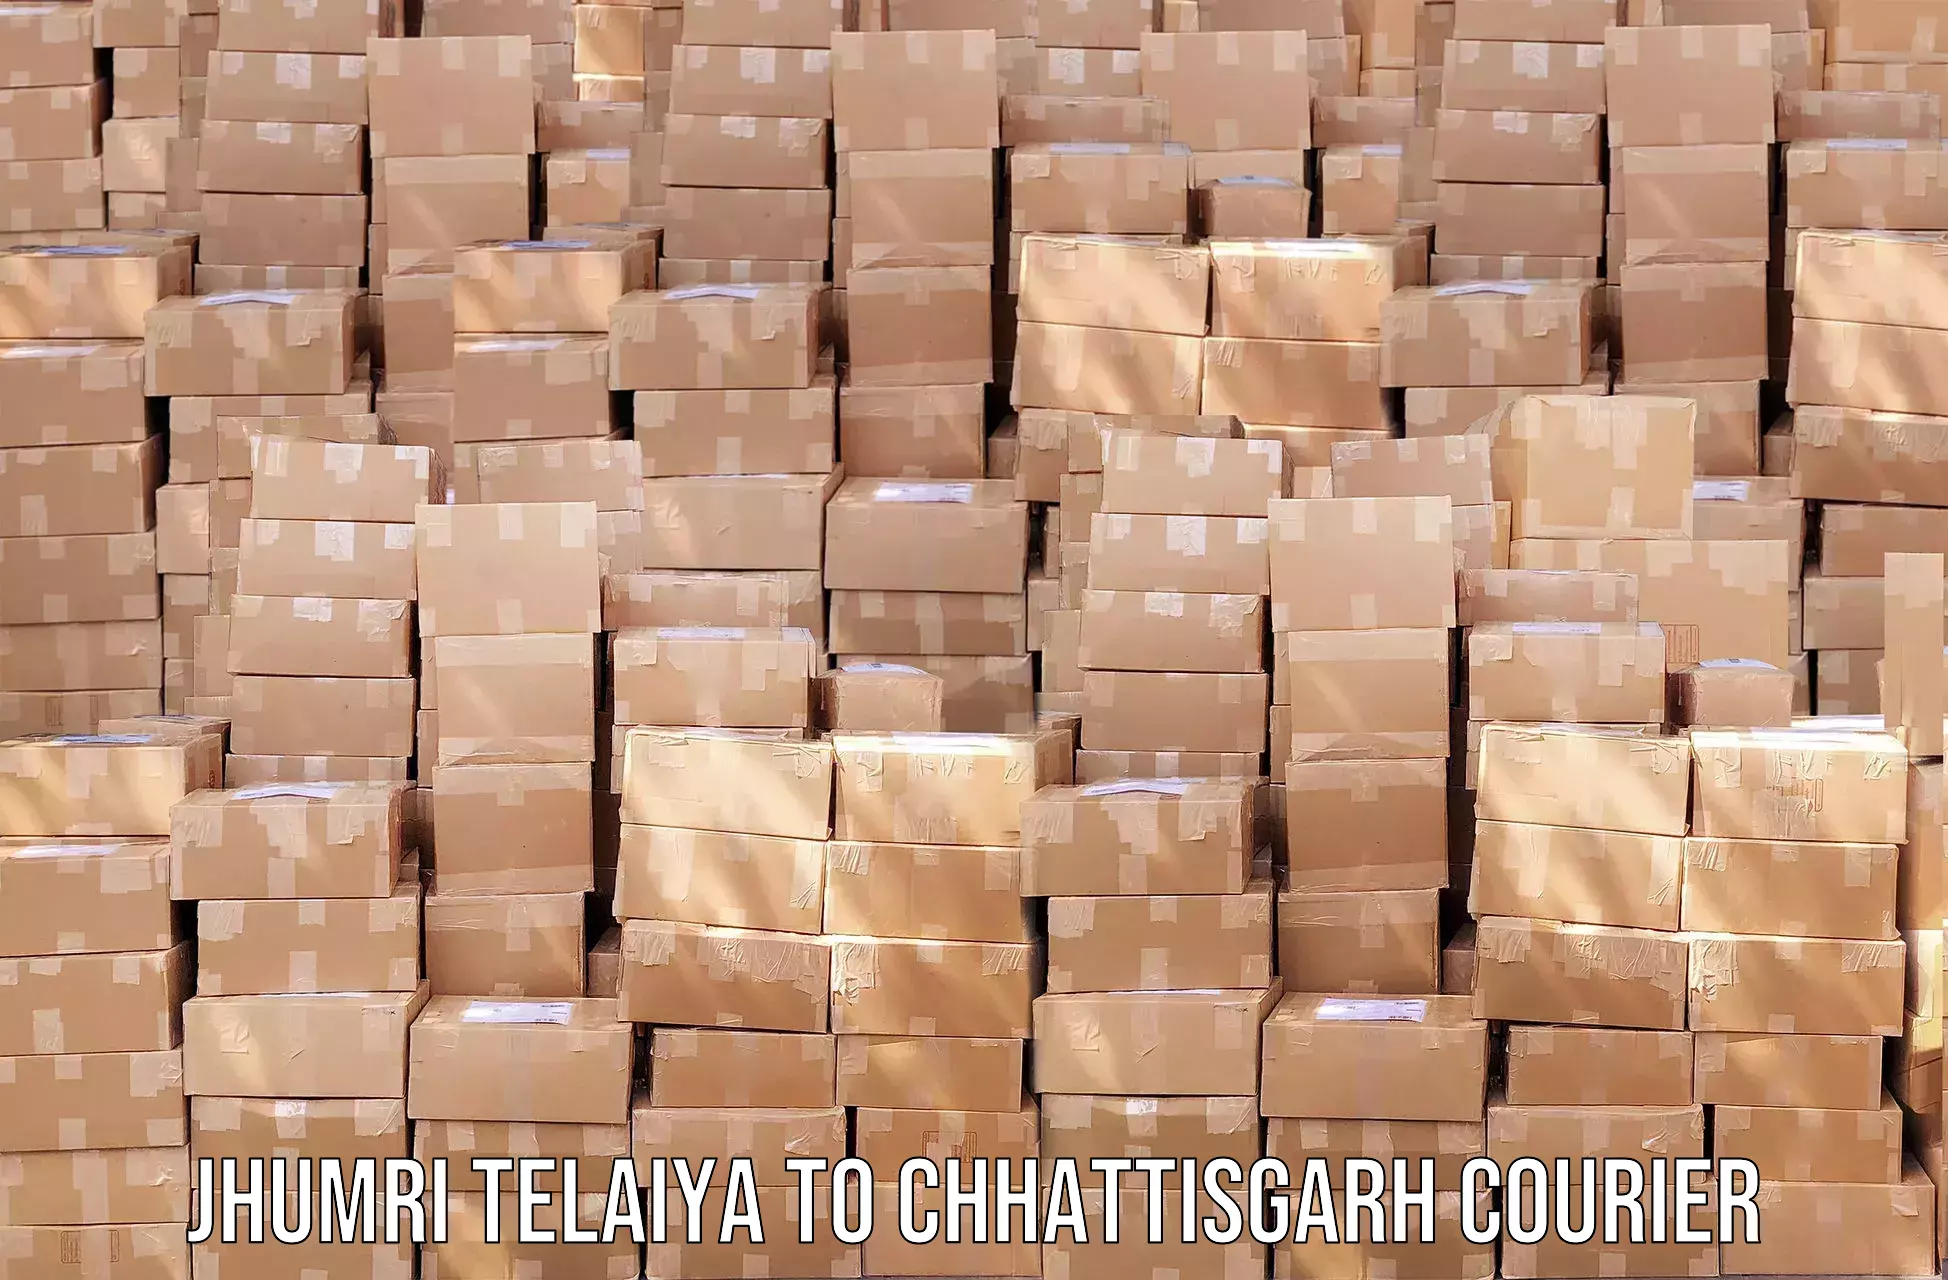 Next-day delivery options Jhumri Telaiya to Chhattisgarh